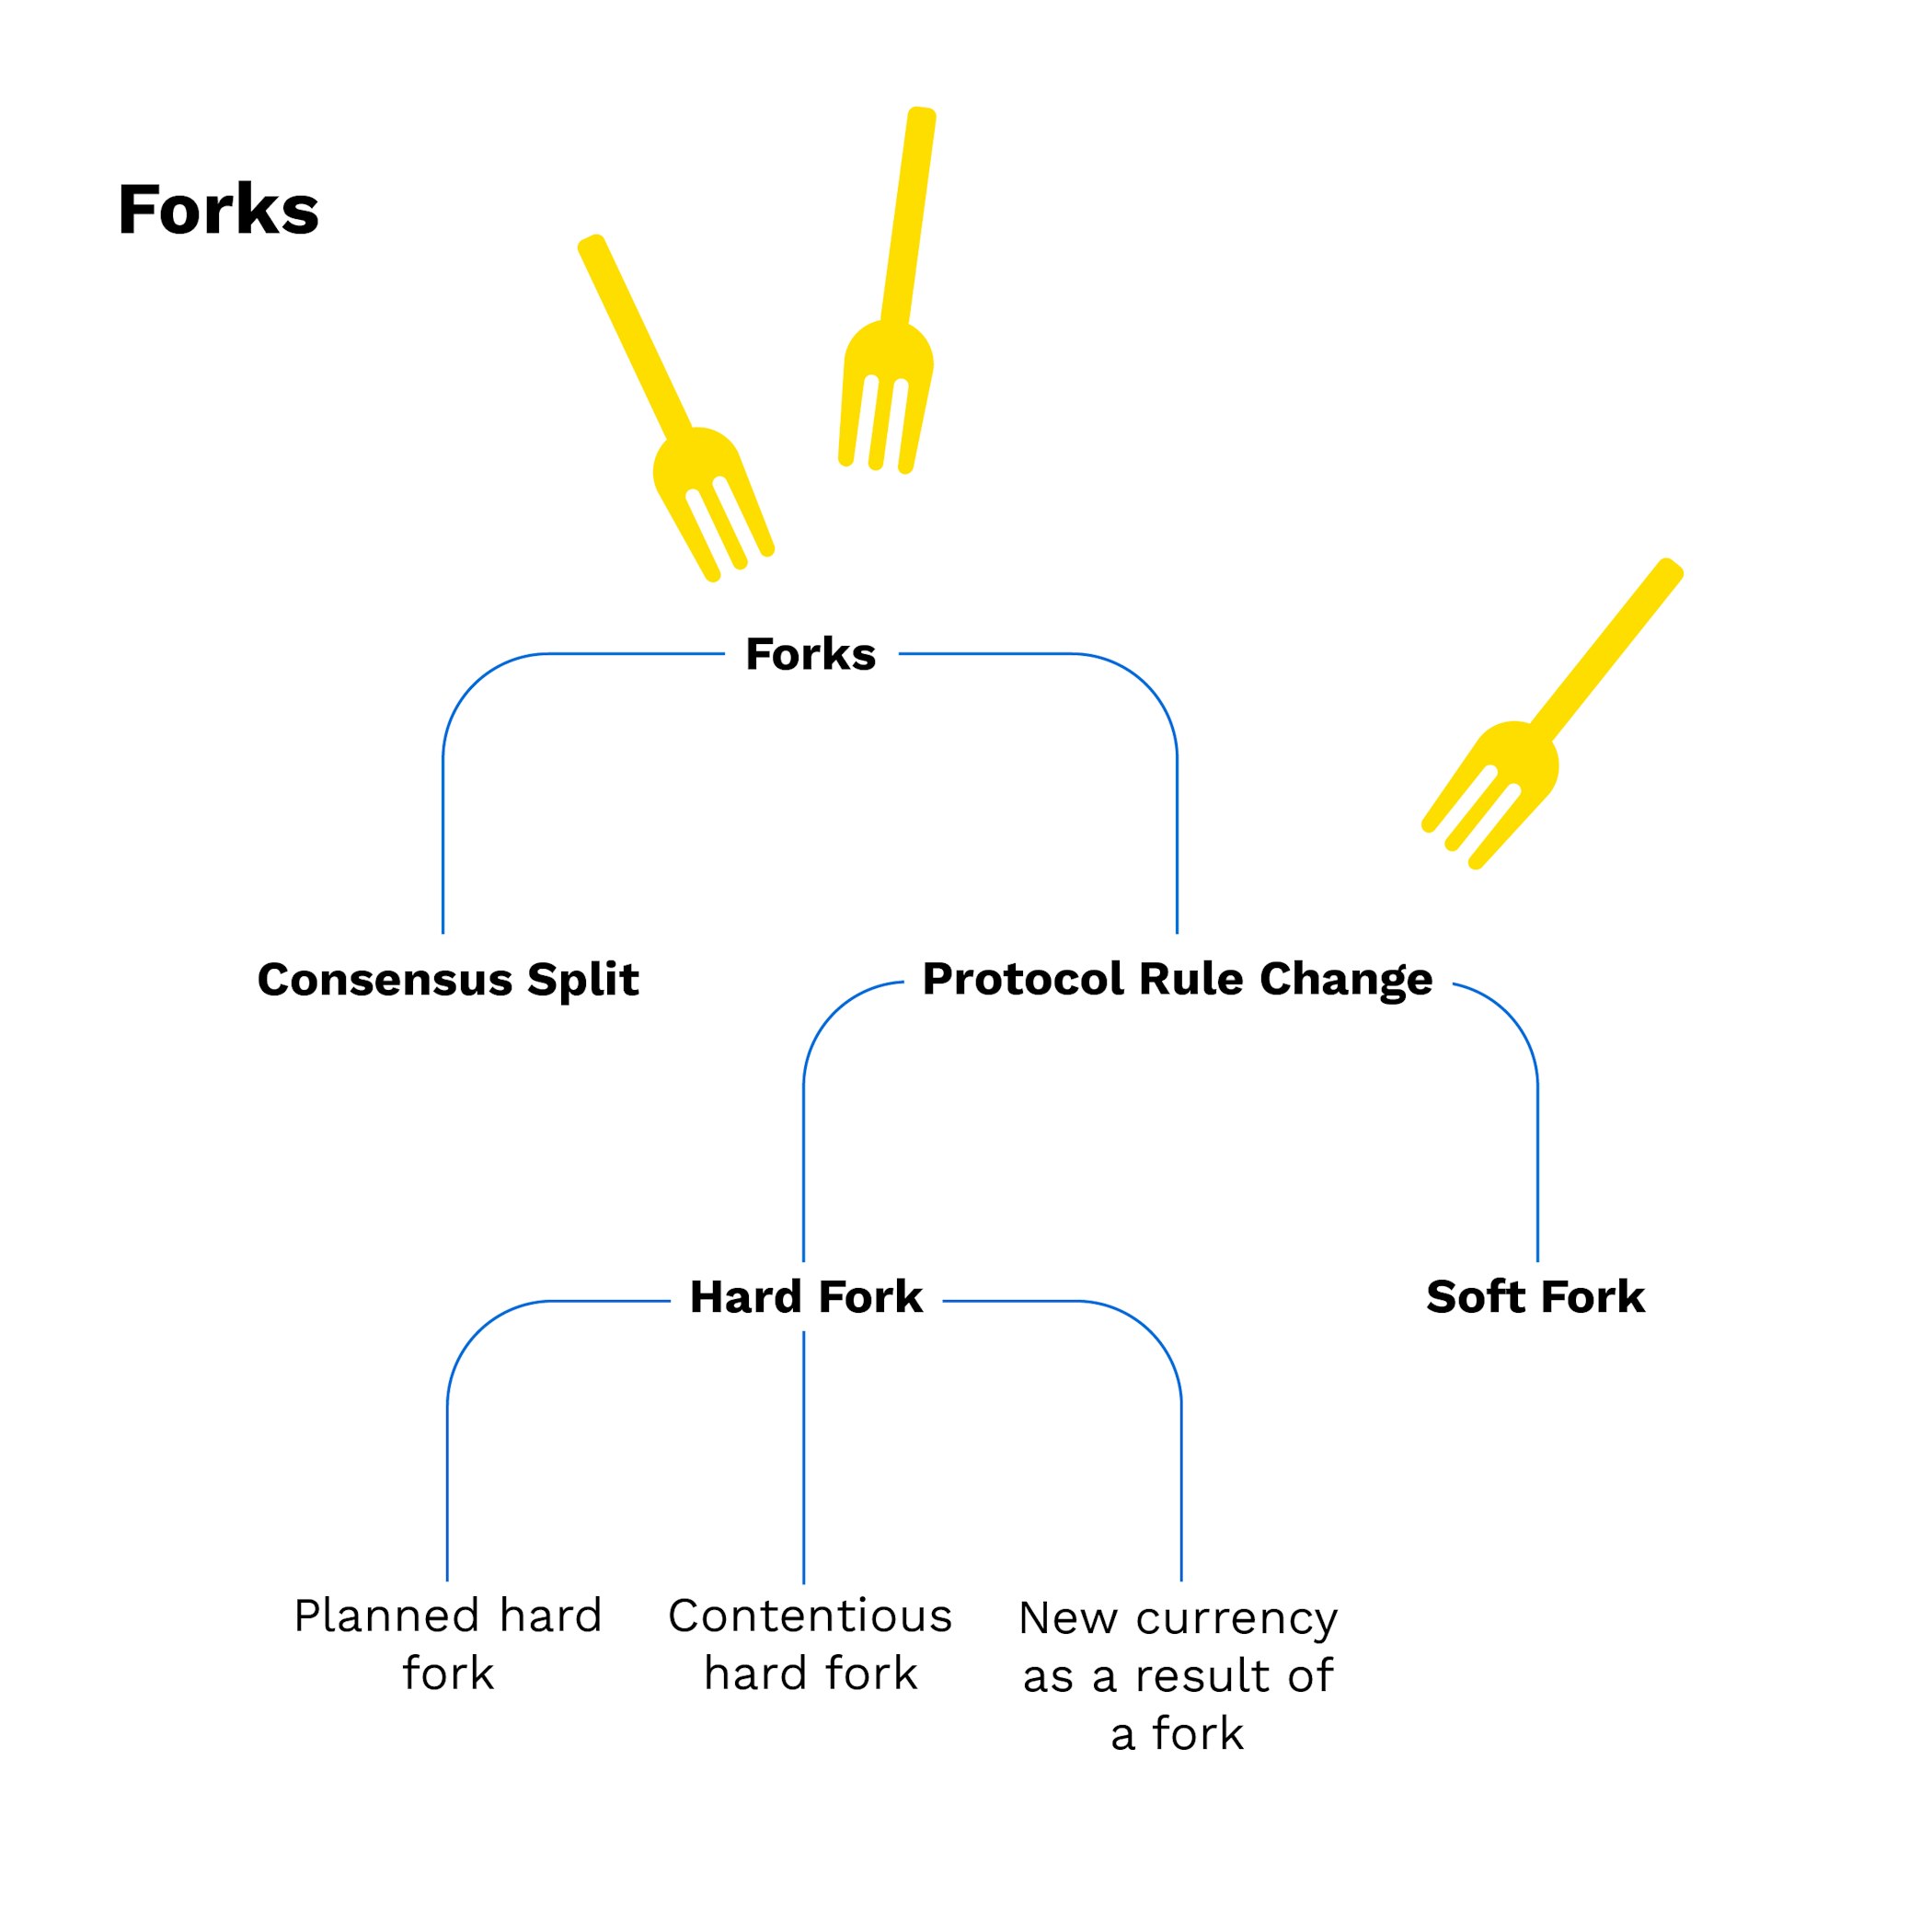 O que é um Hard Fork?